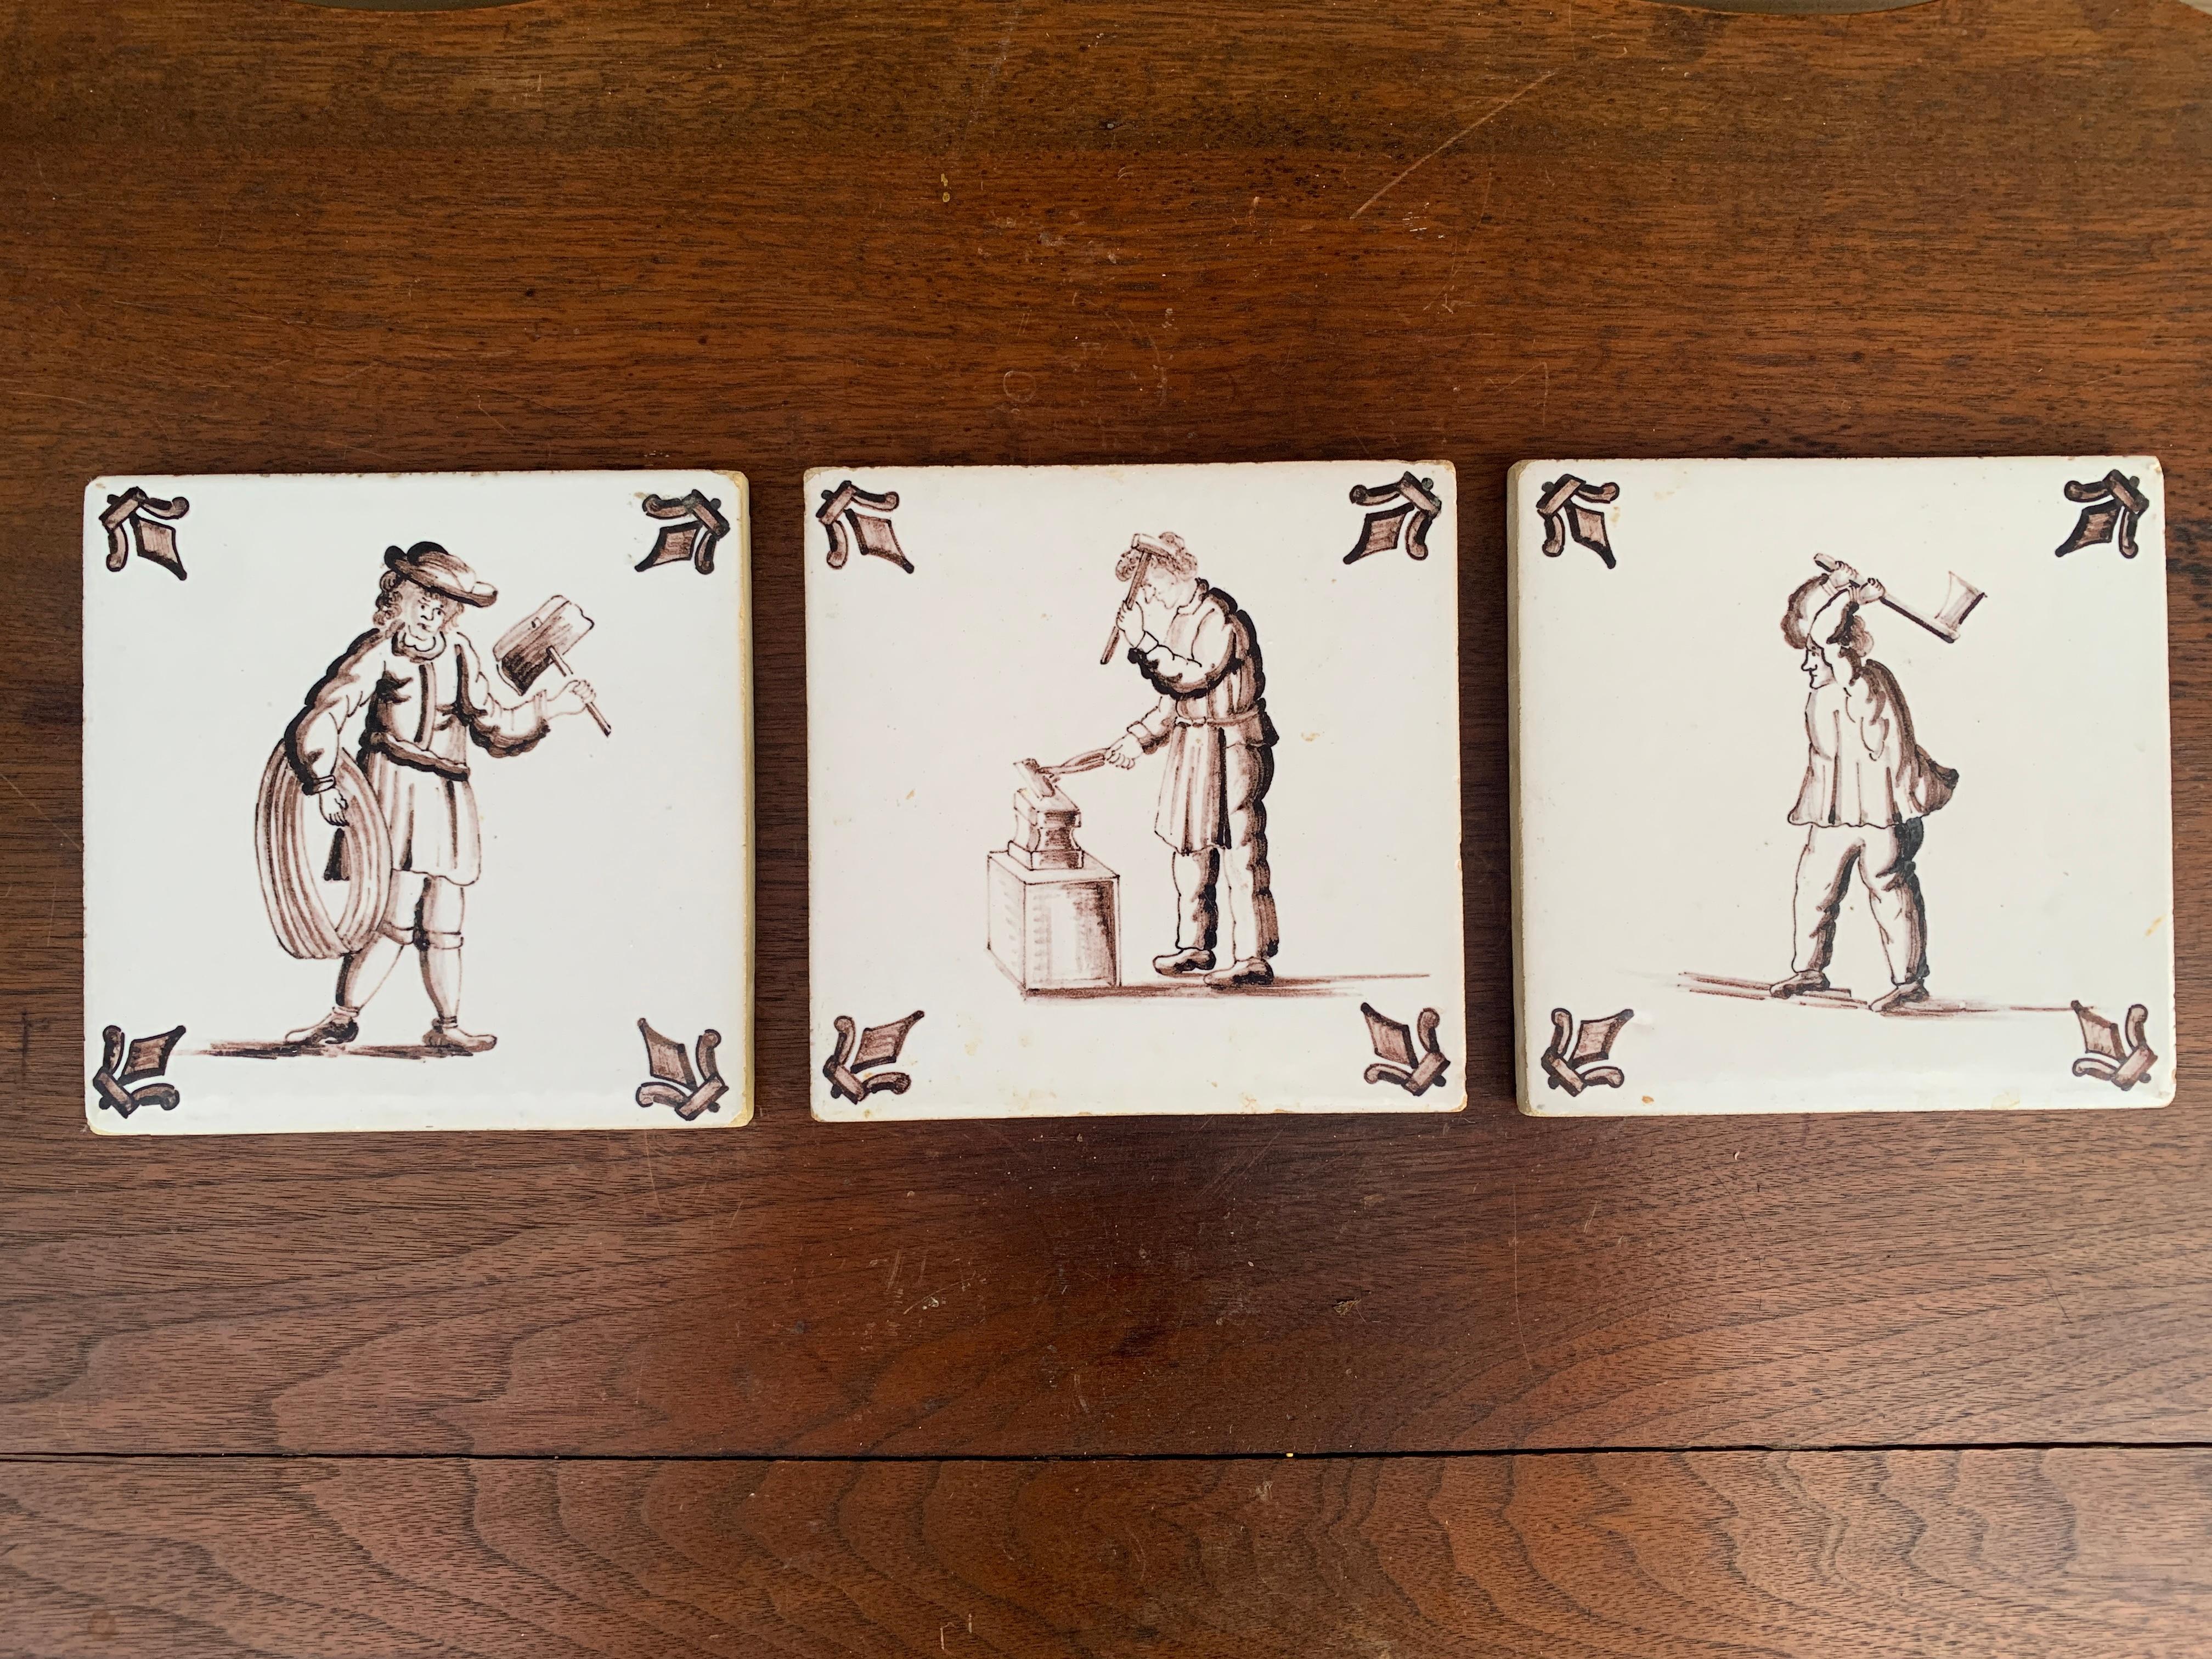 Ein wunderschönes Set aus drei handbemalten braunen und weißen Keramikfliesen im Stil von Delft, auf denen Handwerker und Gewerbetreibende abgebildet sind. Sie eignen sich hervorragend als Untersetzer.

Holland, ca. Mitte des 19. Jahrhunderts

Maße: